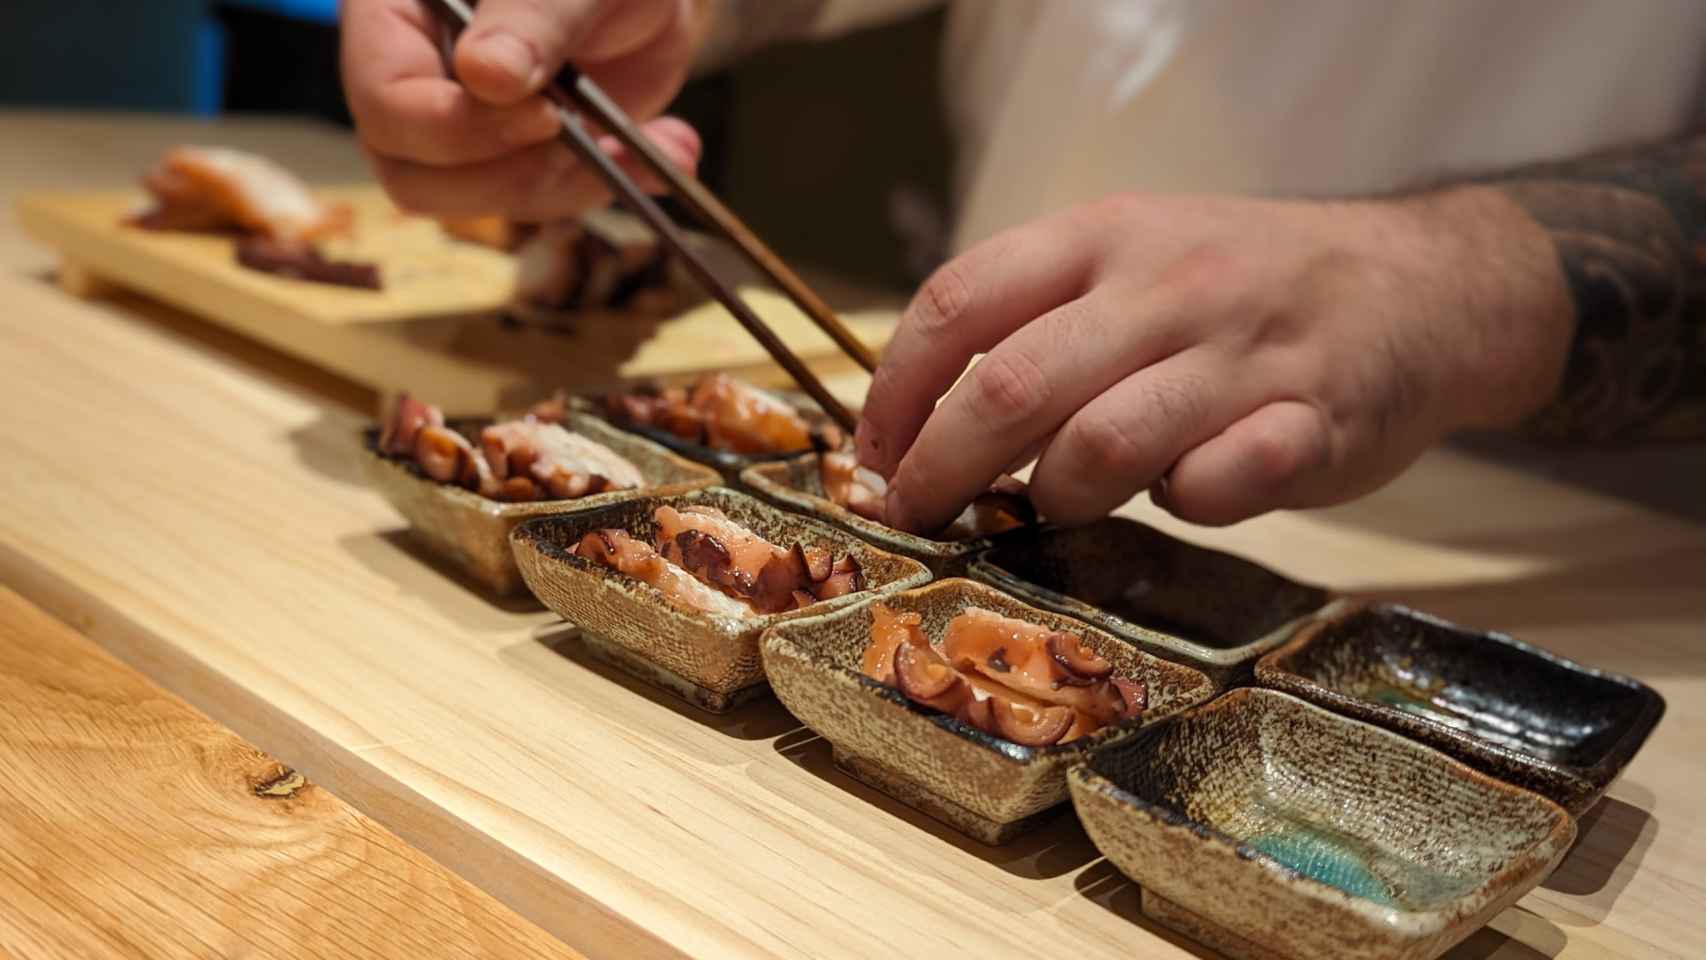 Aunque los nigiris son la columna vertebral del menú omakase de Ebisu by Kobos, hay mucho más para completar la experiencia